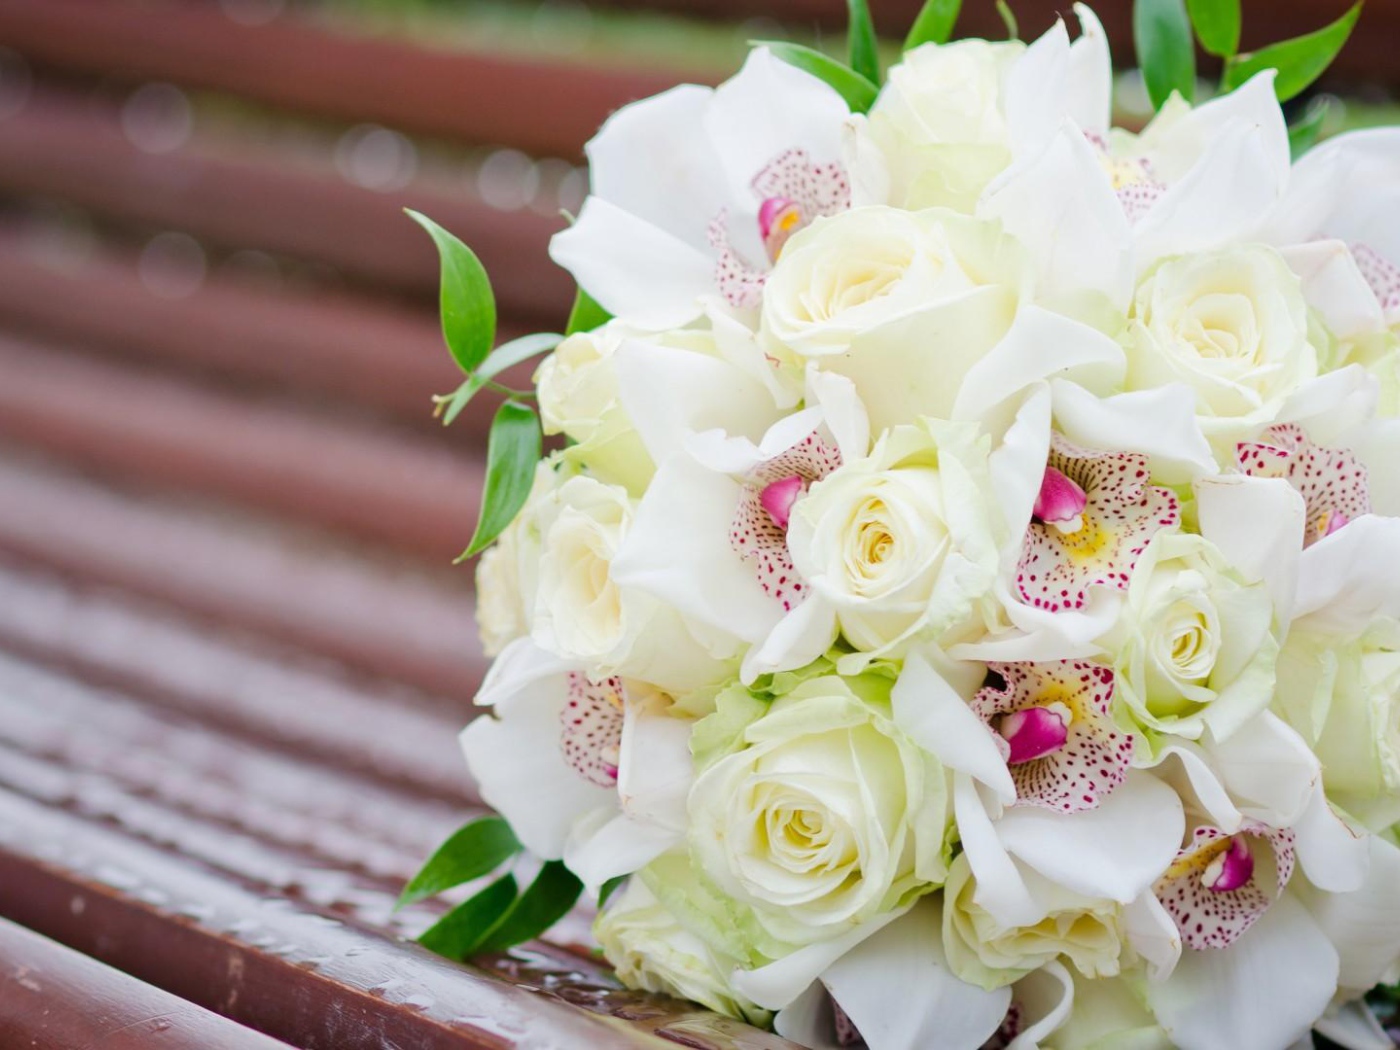 Белые розы и другие цветы в свадебном букете